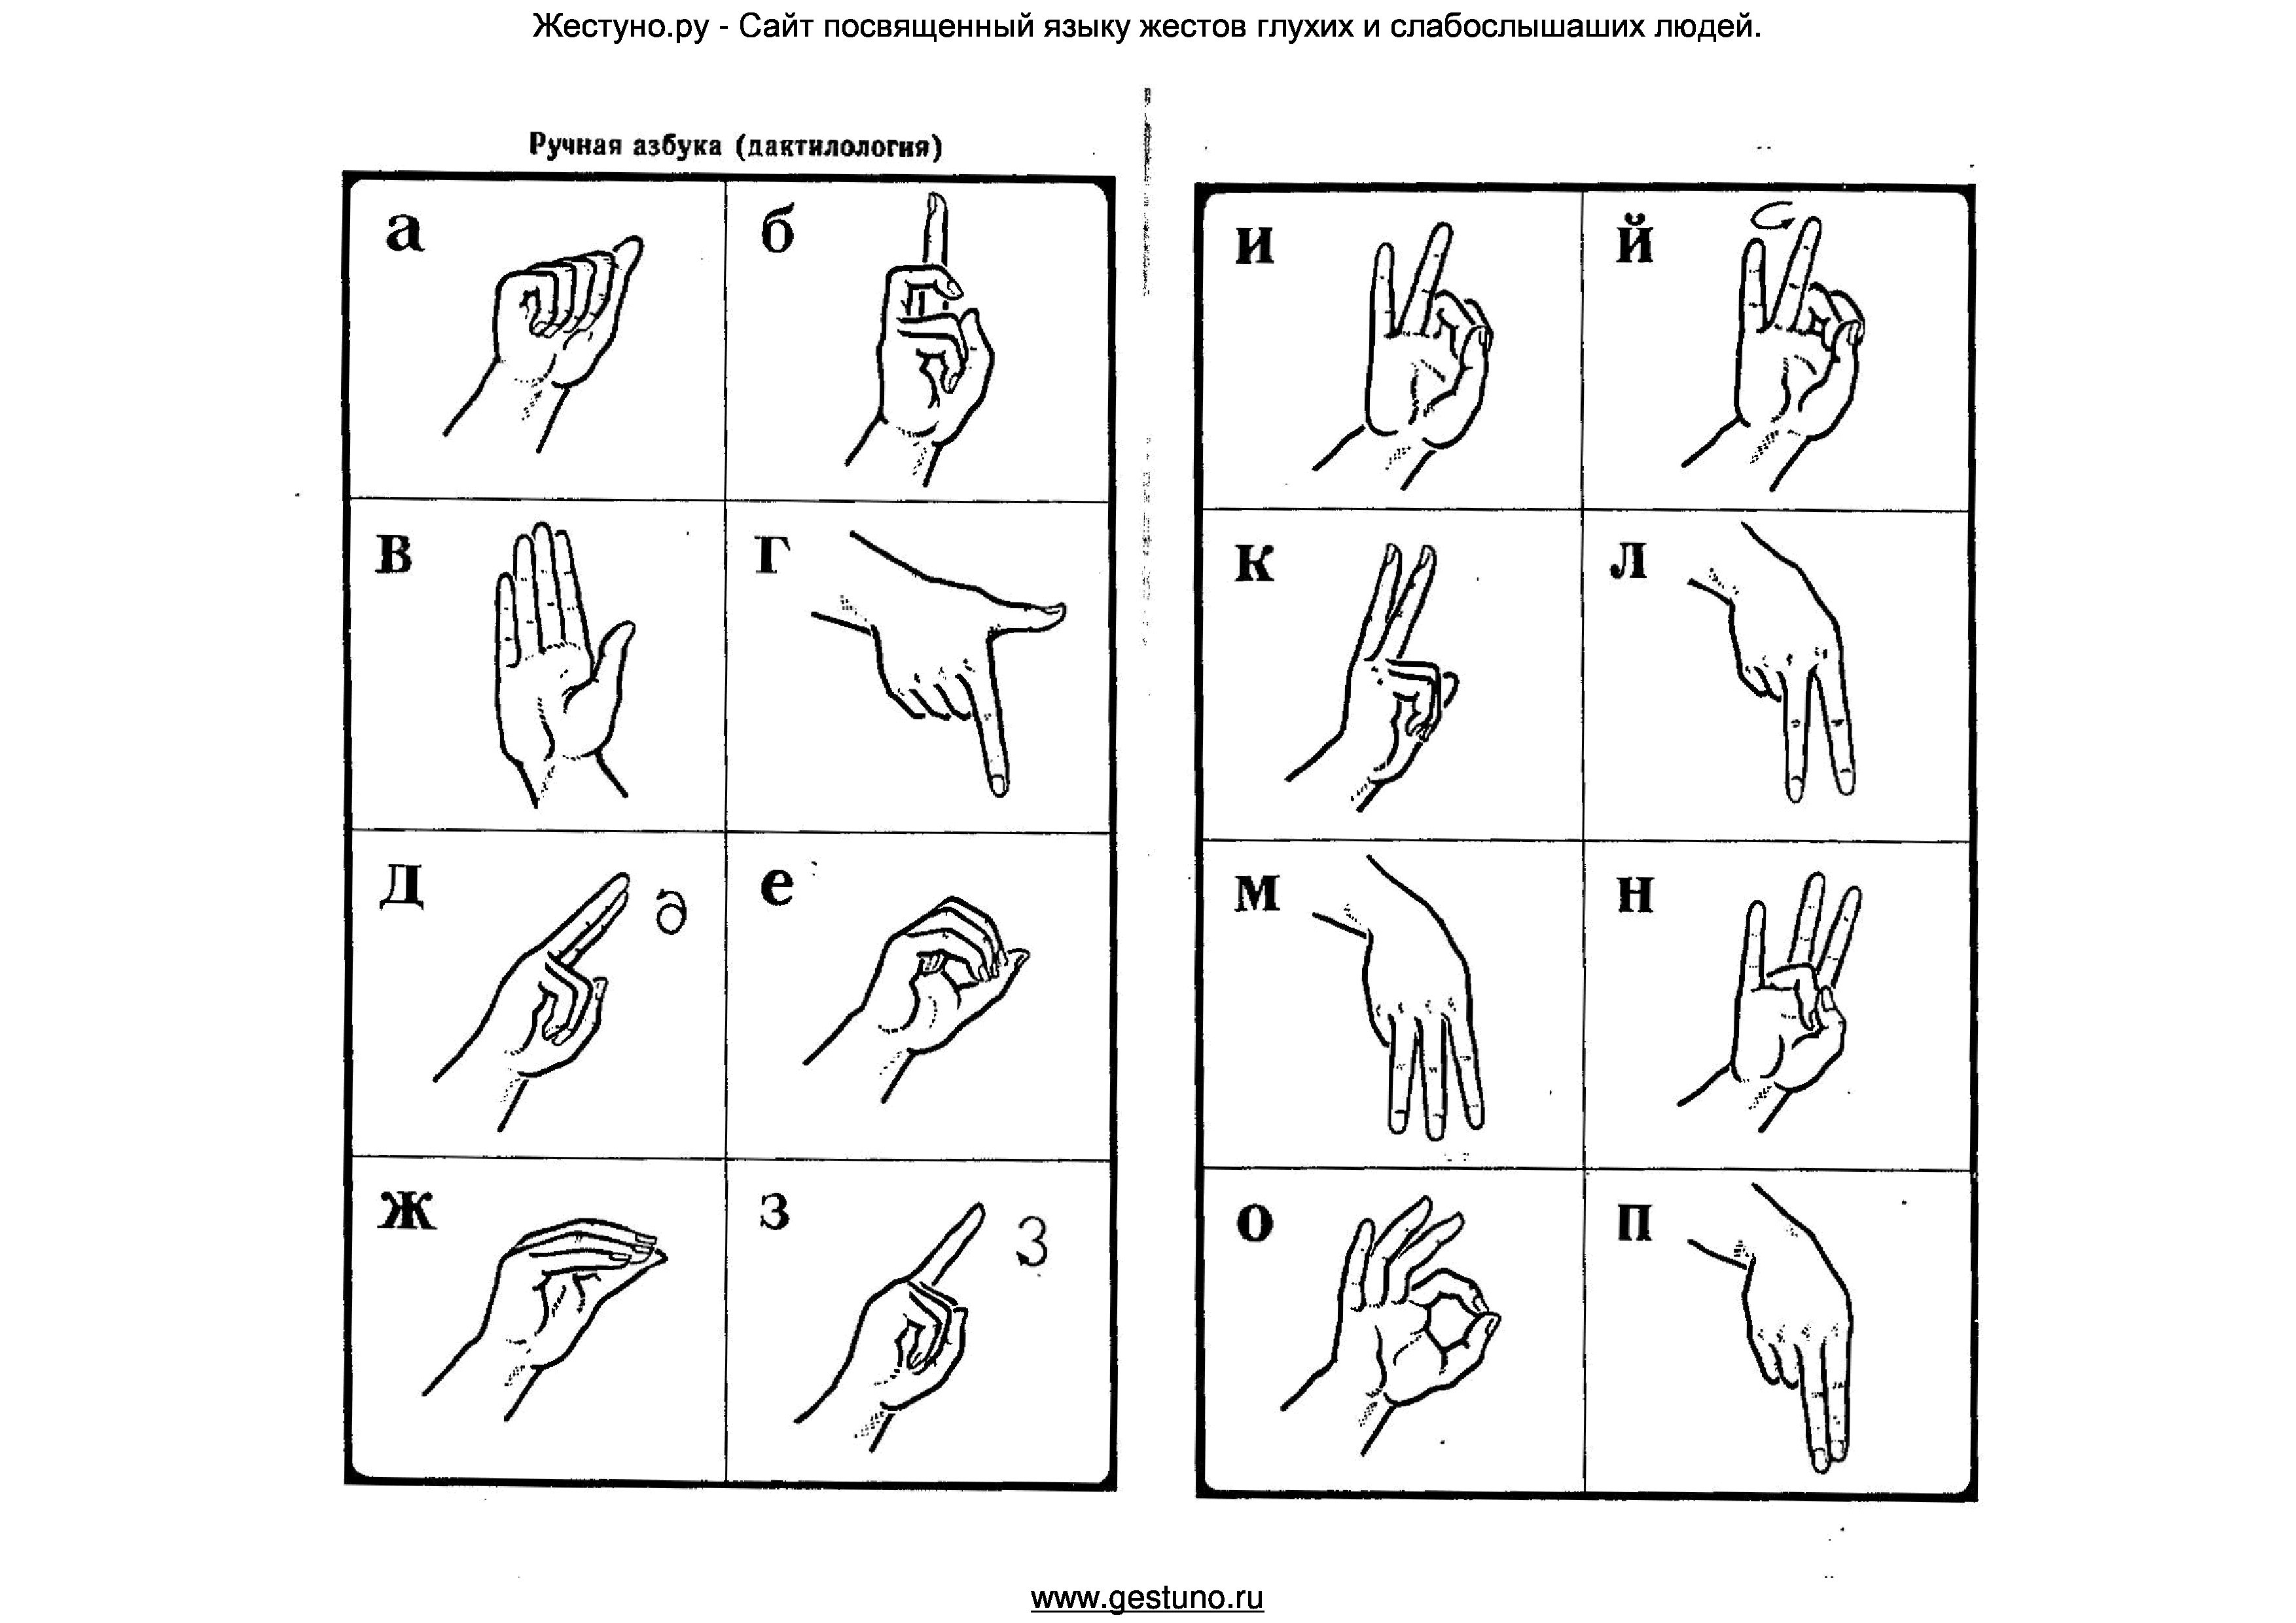 Алфавит глухих букв. Язык жестов жестуно. Дактиль Азбука для глухих. Дактильная Азбука и Азбука жестов. Дактиль алфавит жестов.